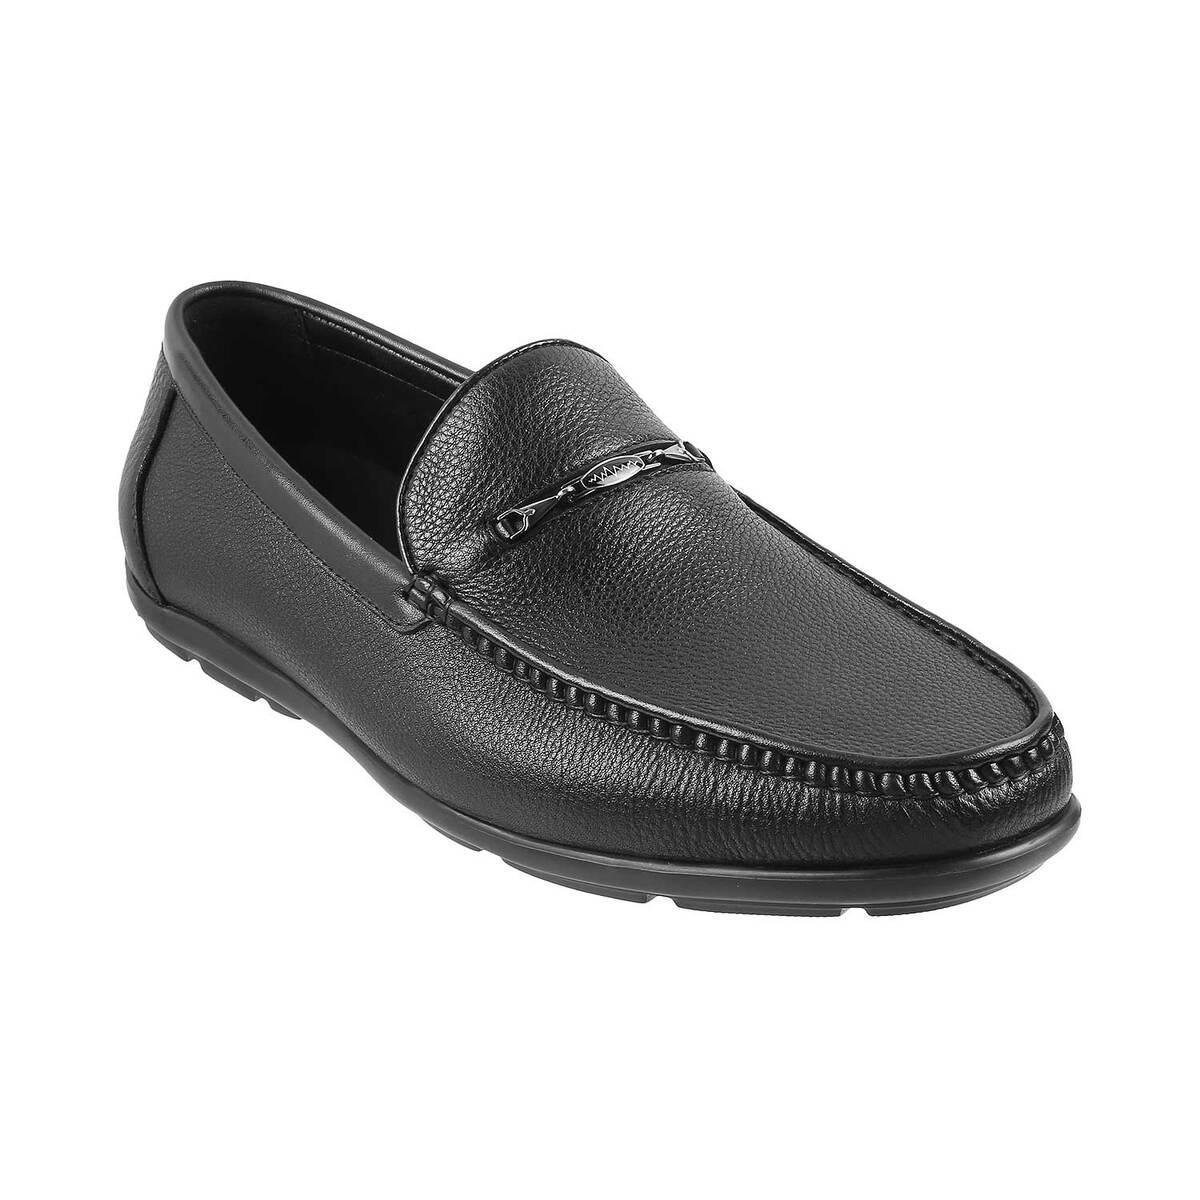 Buy Metro Mens Leather Black Loafers Size 6 UK 40 EU at Amazonin